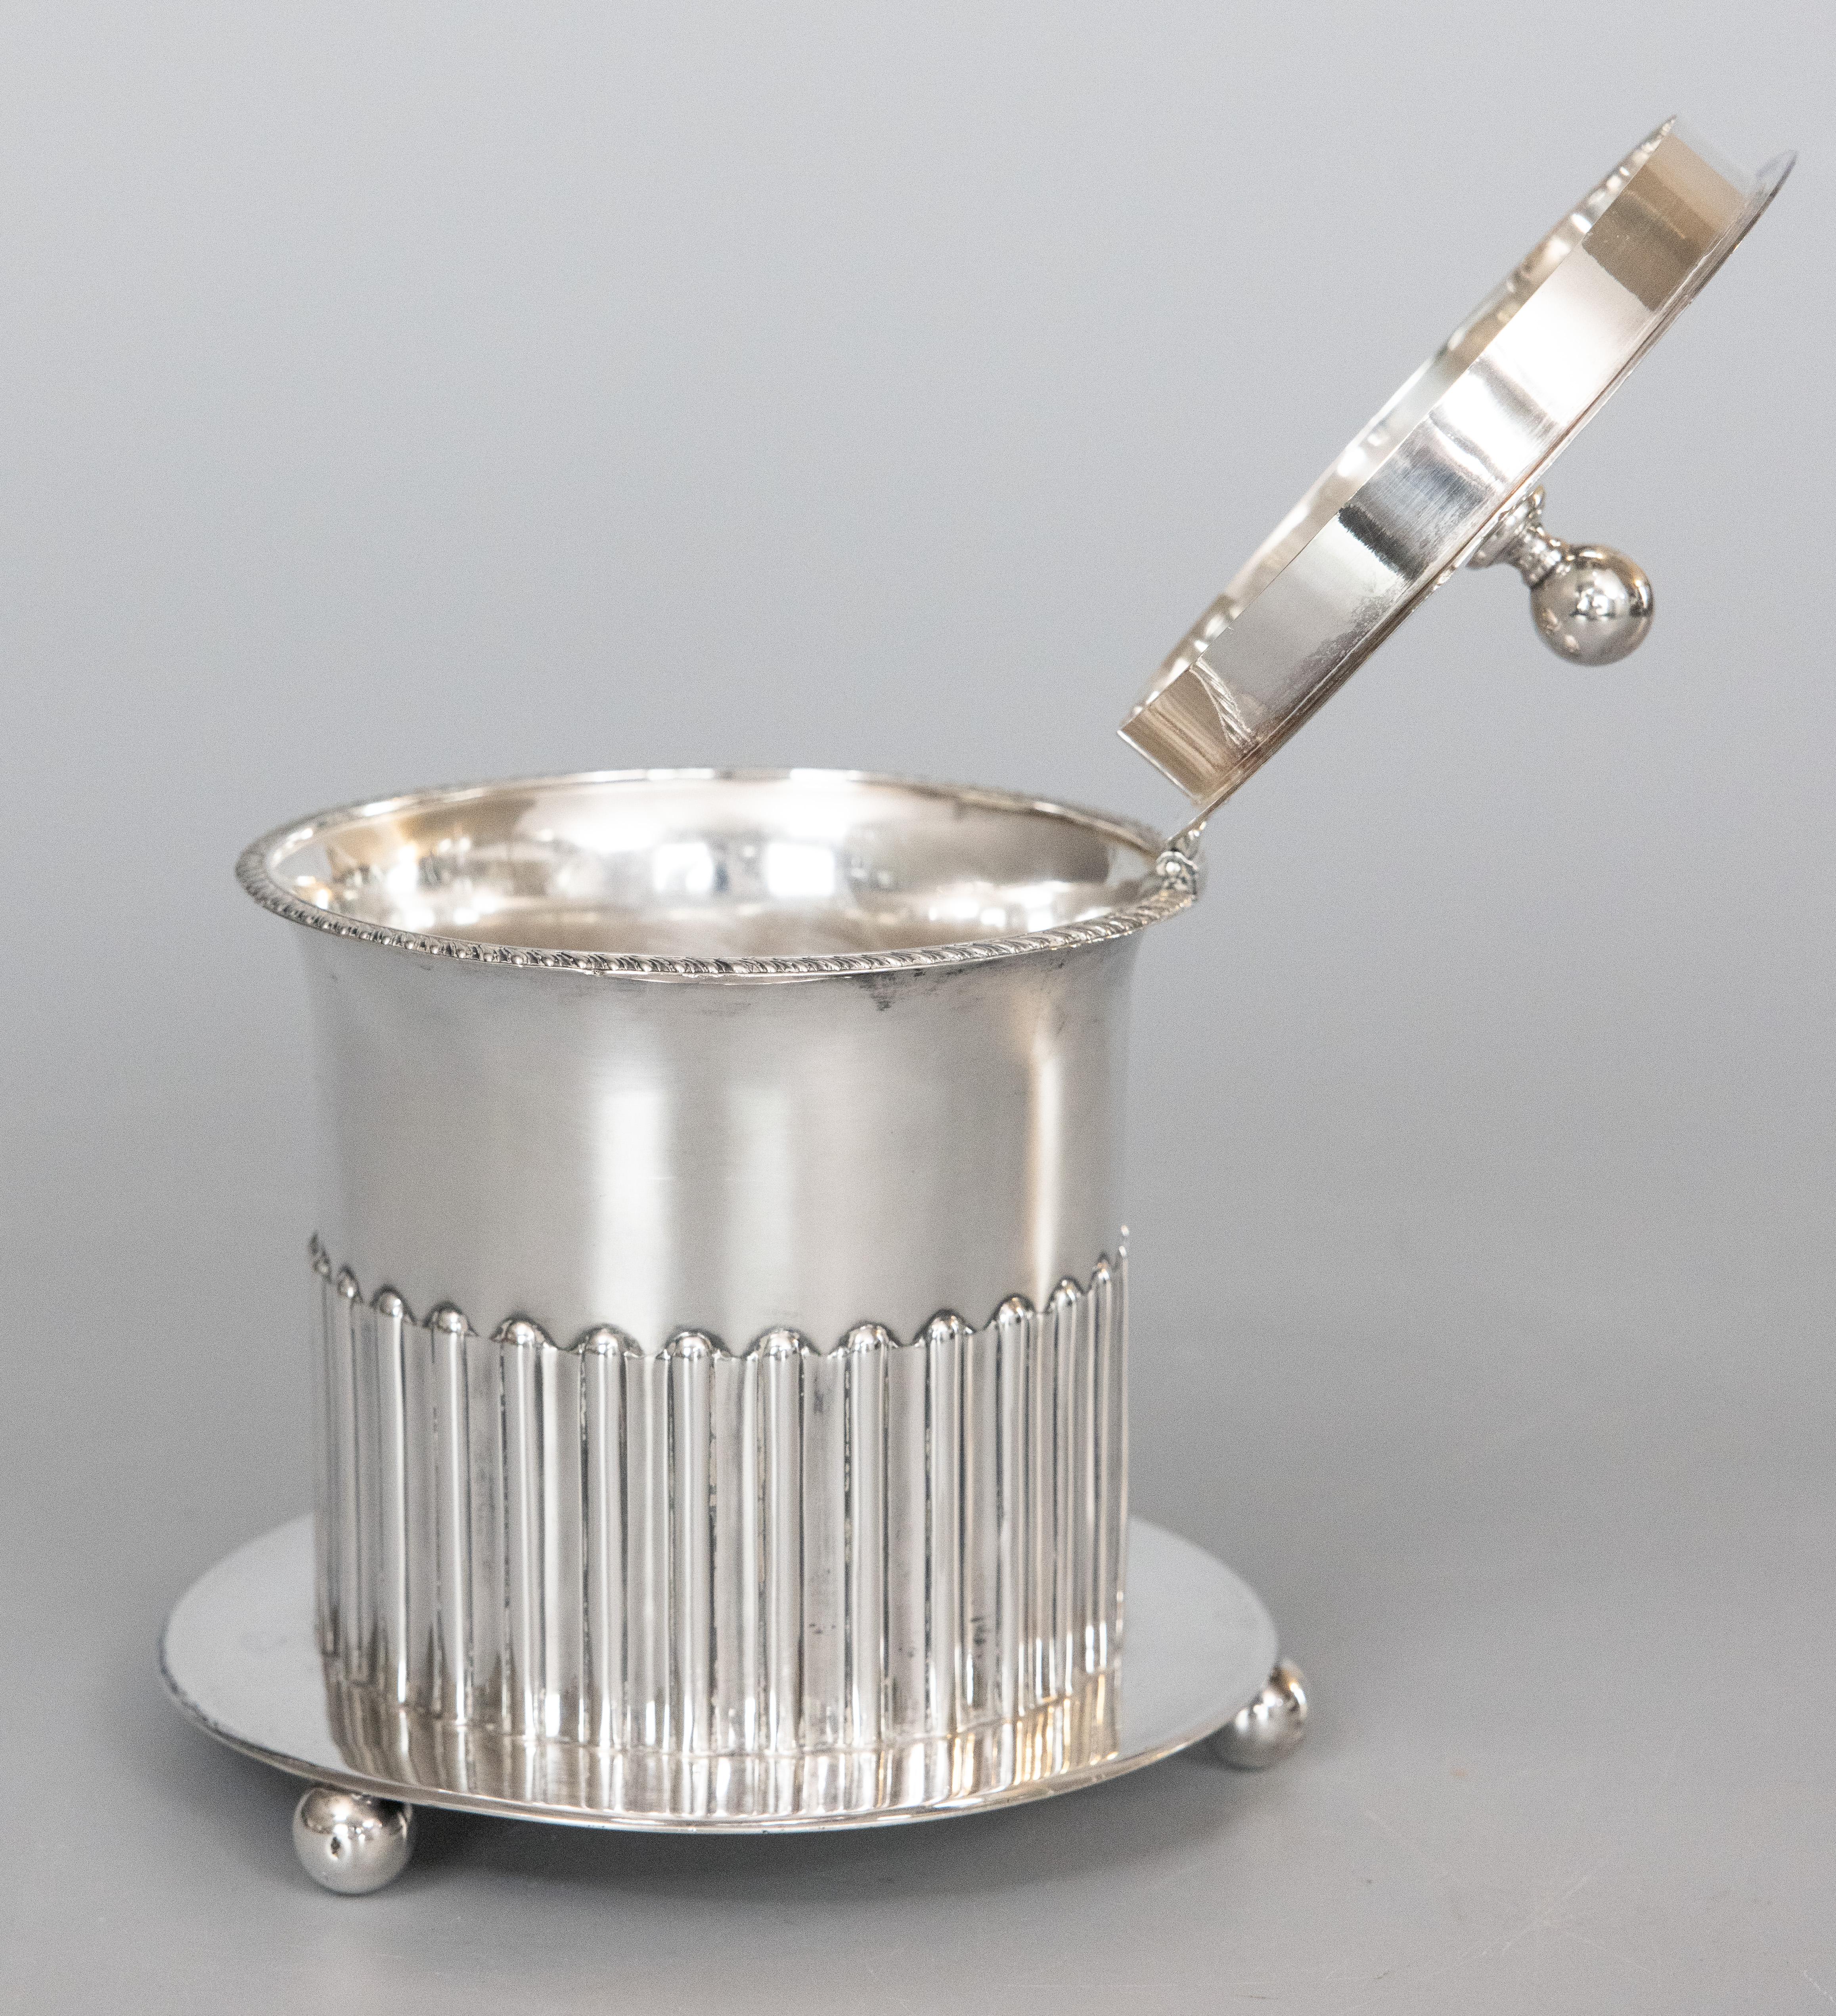 Une grande boîte à thé ou boîte à biscuits en métal argenté de la fin du 19e siècle, avec un couvercle à charnière et un plateau rond attaché, par Roberts & Belk, Shelfield, Angleterre. Marque du fabricant au revers. Cette jolie boîte à thé a une